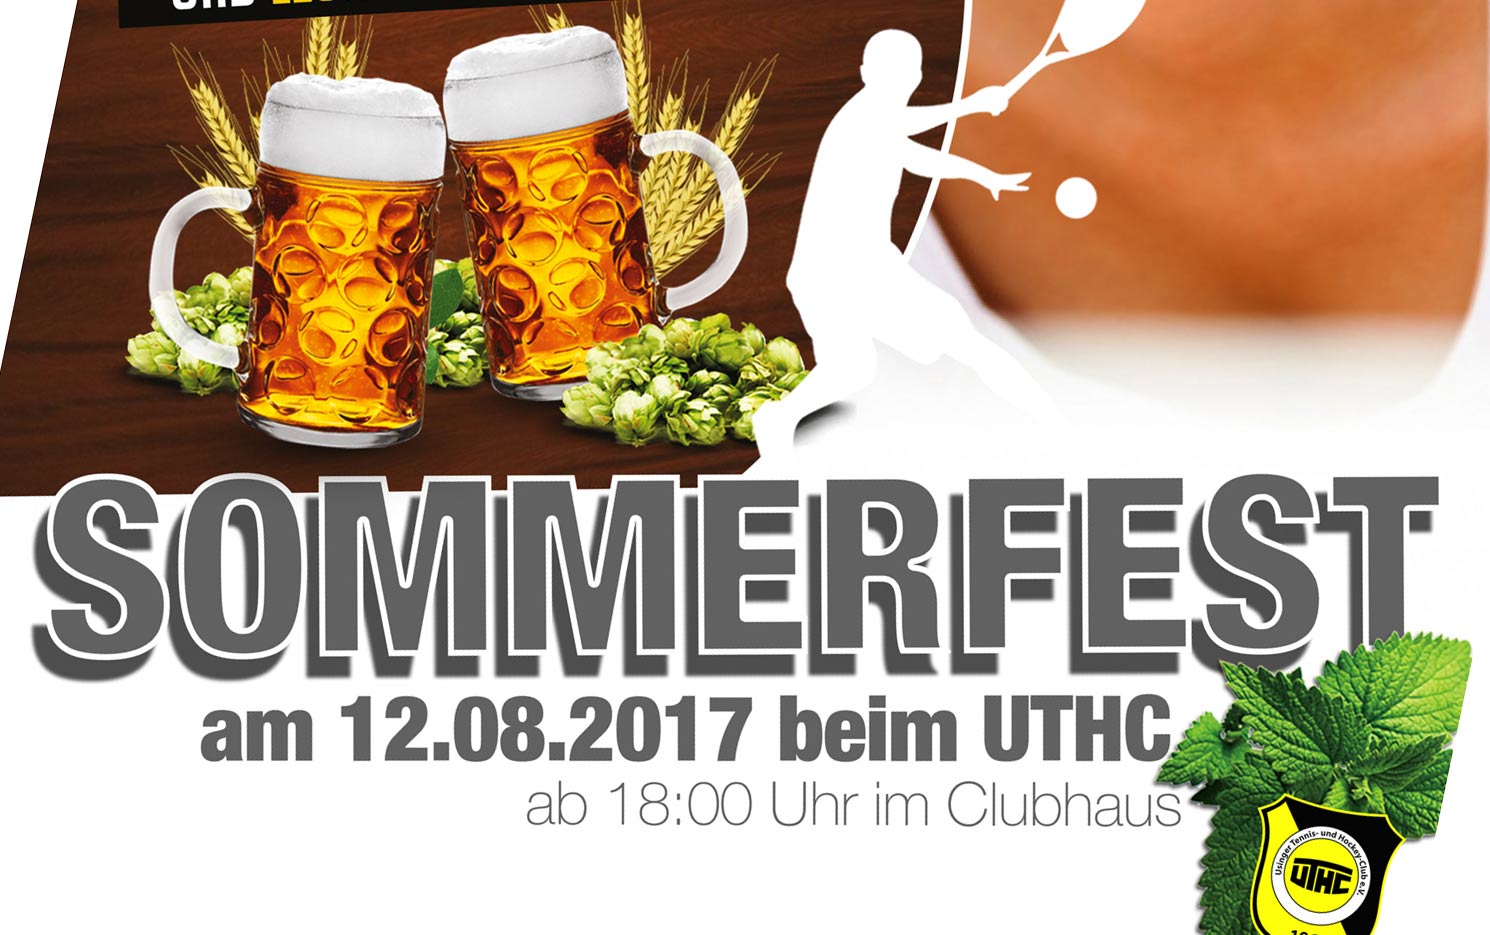 UTHC-Sommerfest-2017-Ankuendigung